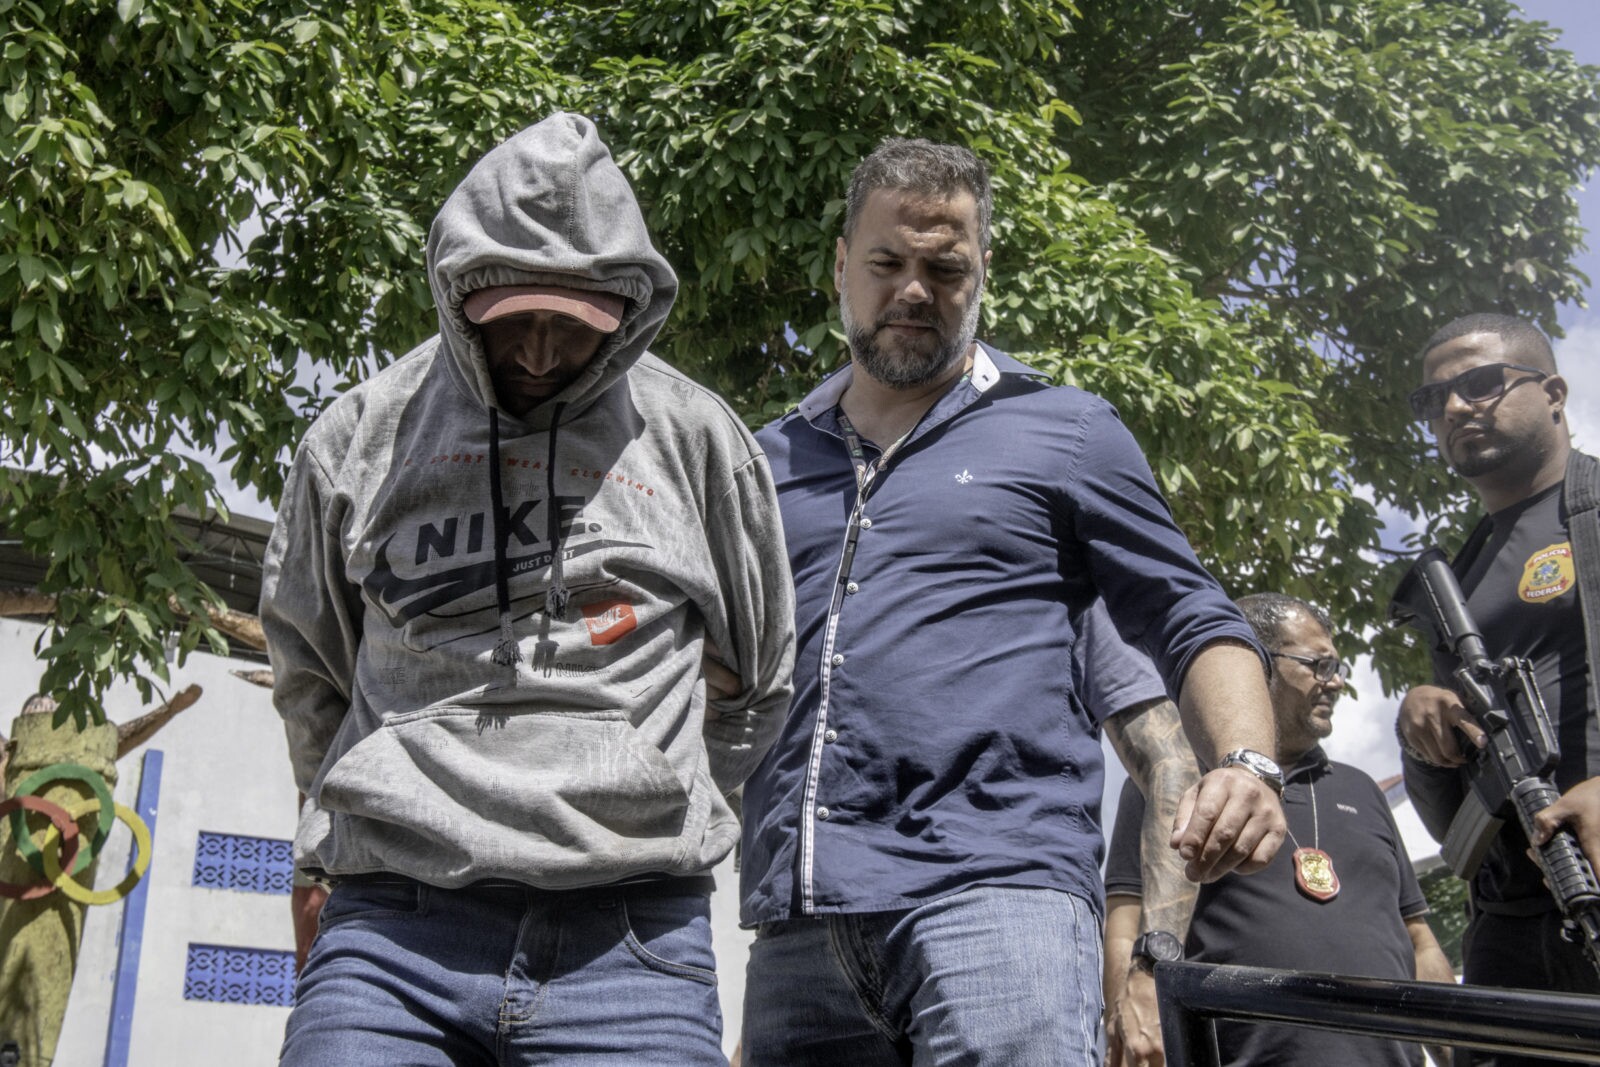 18 de junho - Um terceiro suspeito de envolvimento no assassinato de Bruno e Dom, Jefferson Lima da Silva, vulgo “Pelado da Dinha” foi levado para audiência de custódia no Fórum de Atalaia do Norte